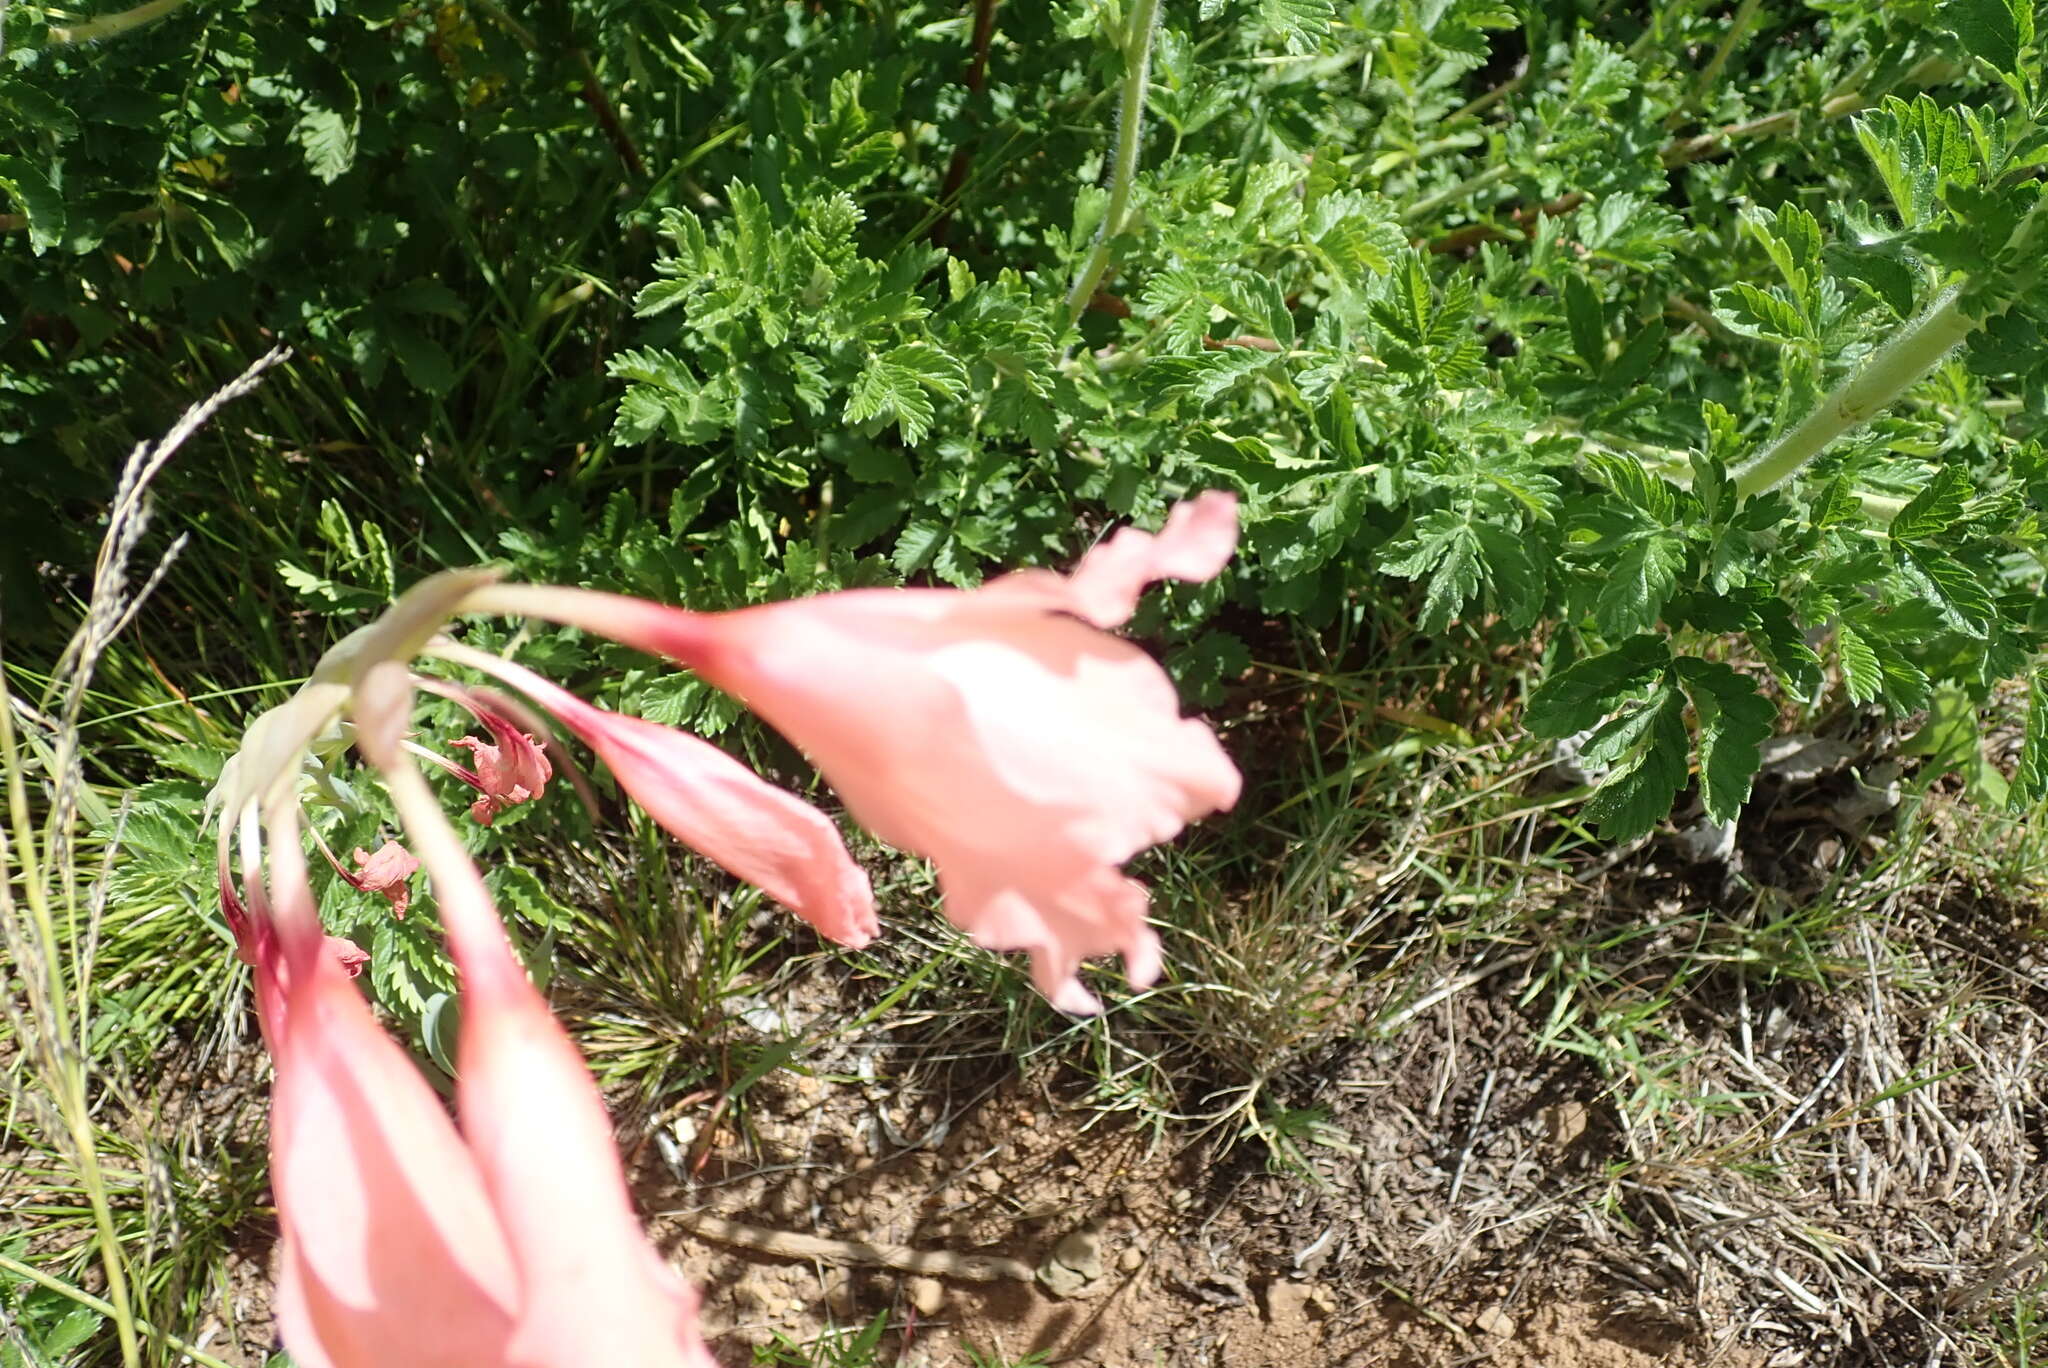 Image of Gladiolus oppositiflorus Herb.